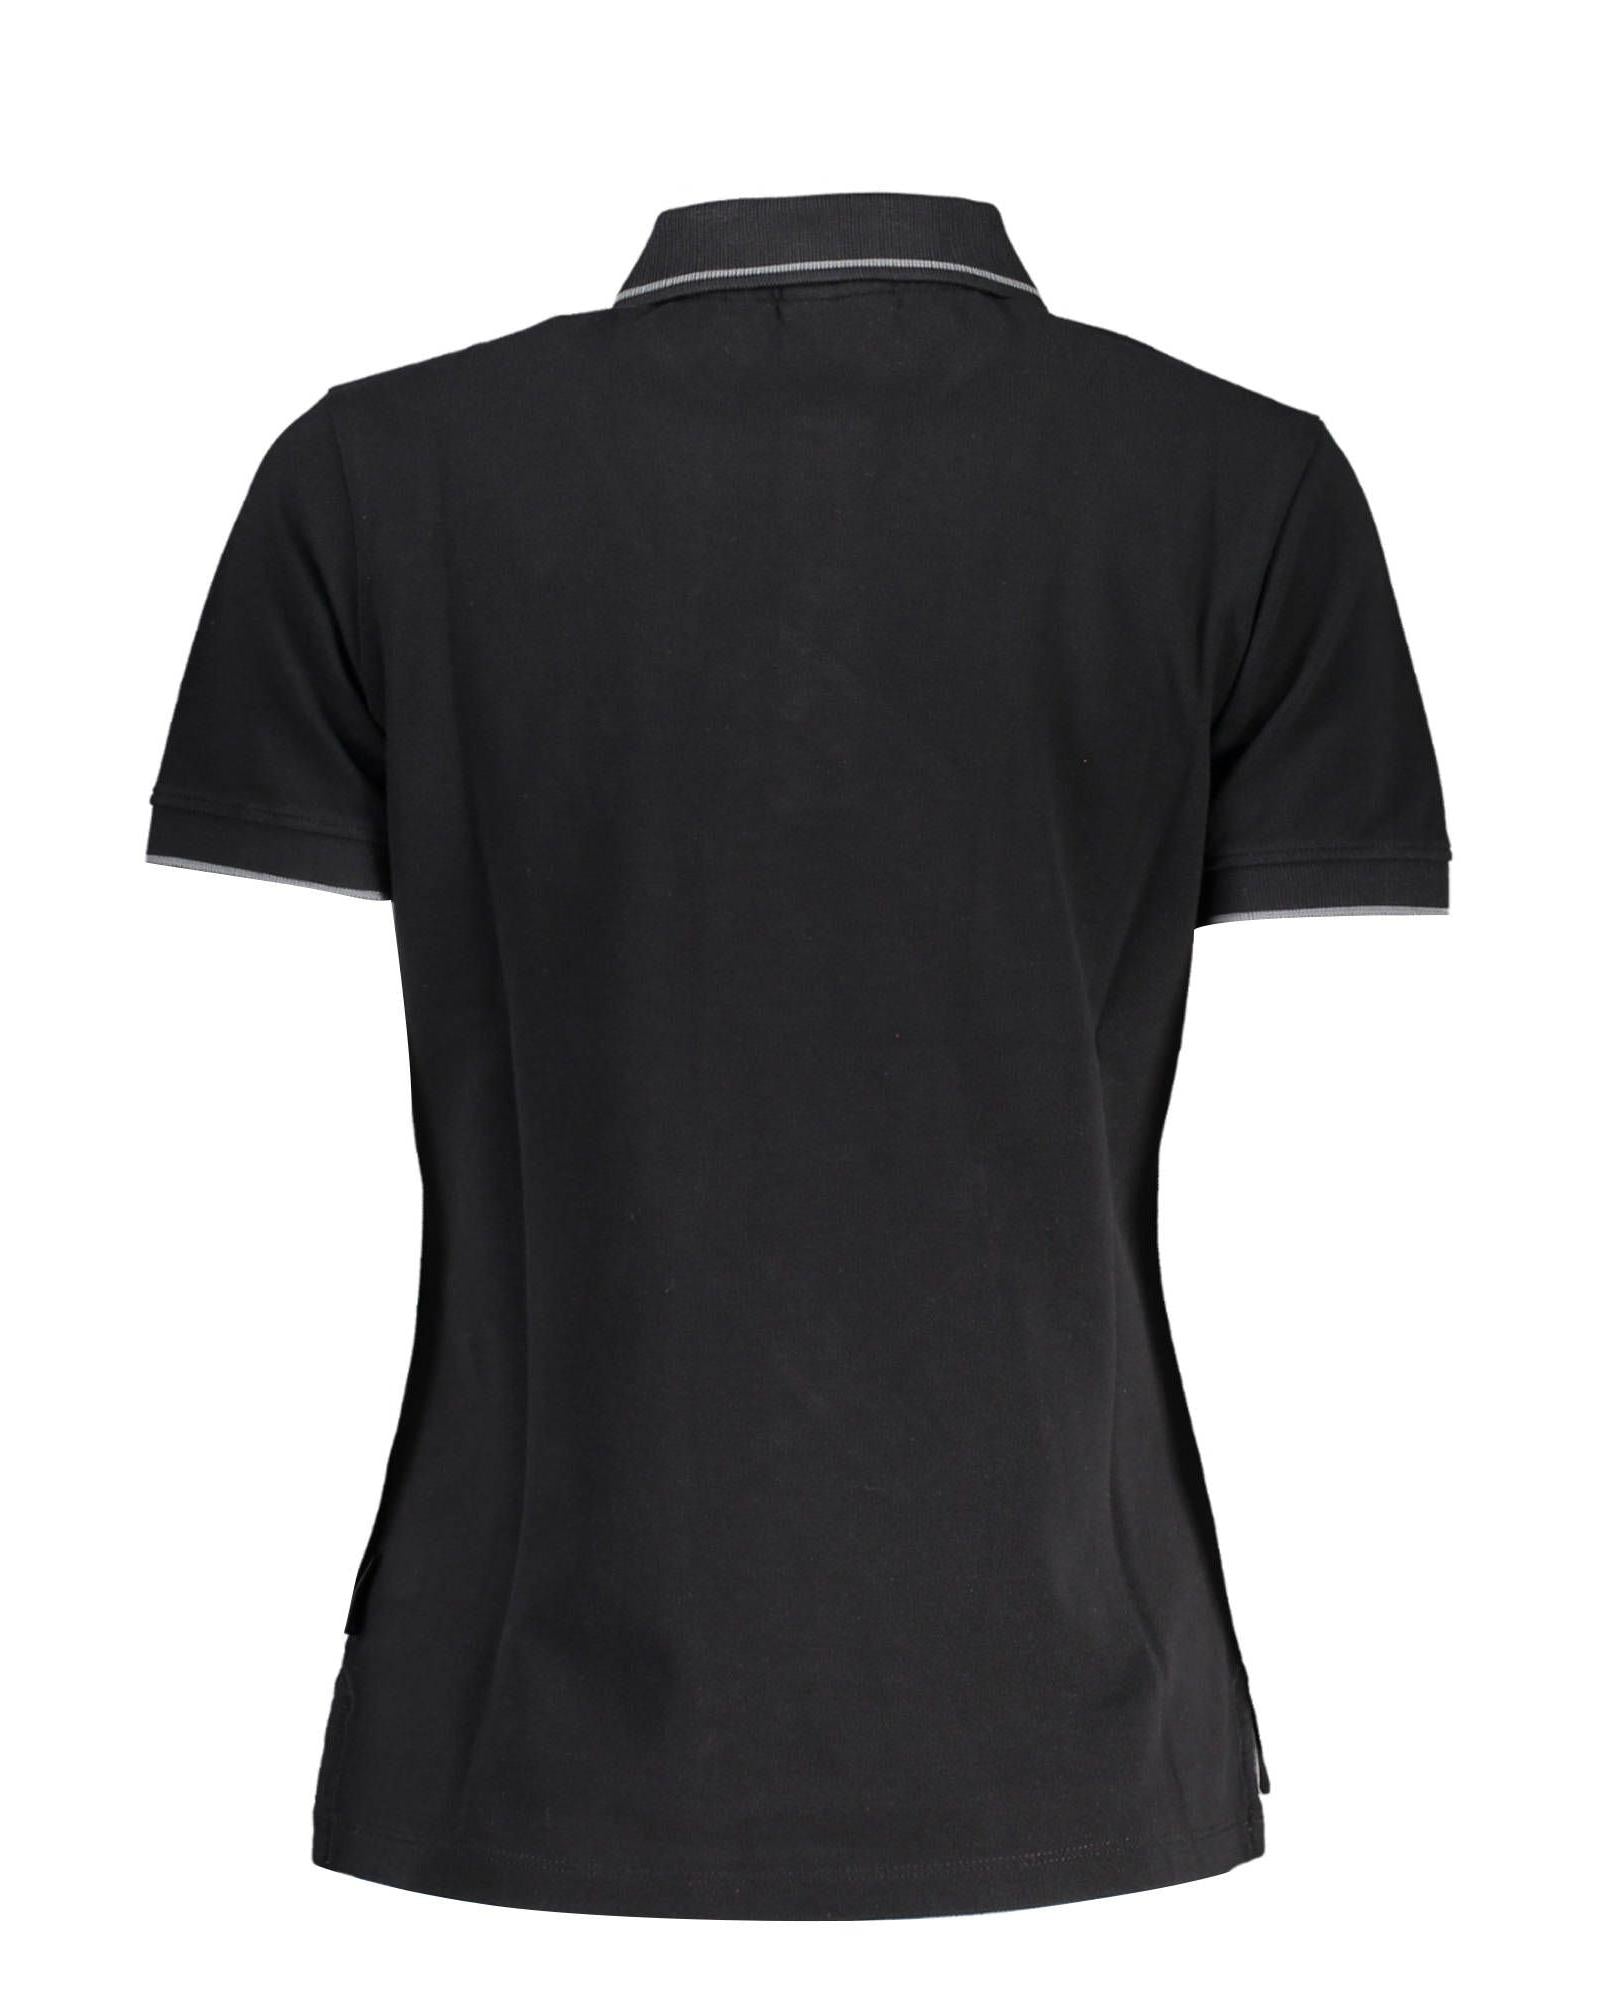 Men's Black Cotton Polo Shirt - M